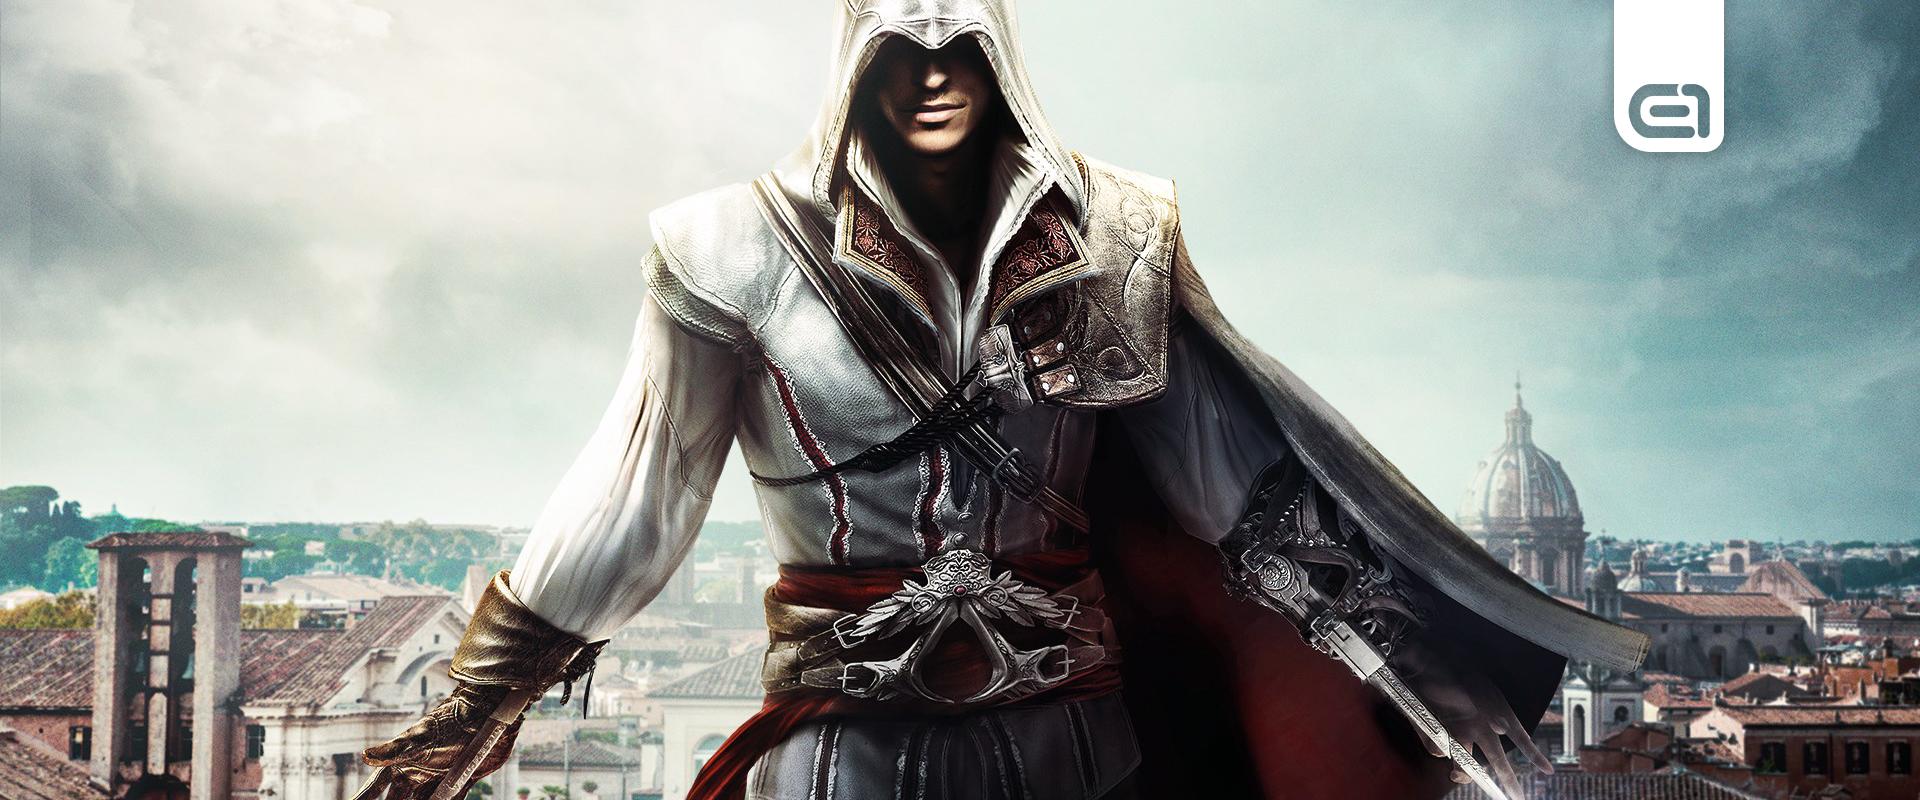 Bukta a Netflix az Assassin's Creed sorozat showrunnerét